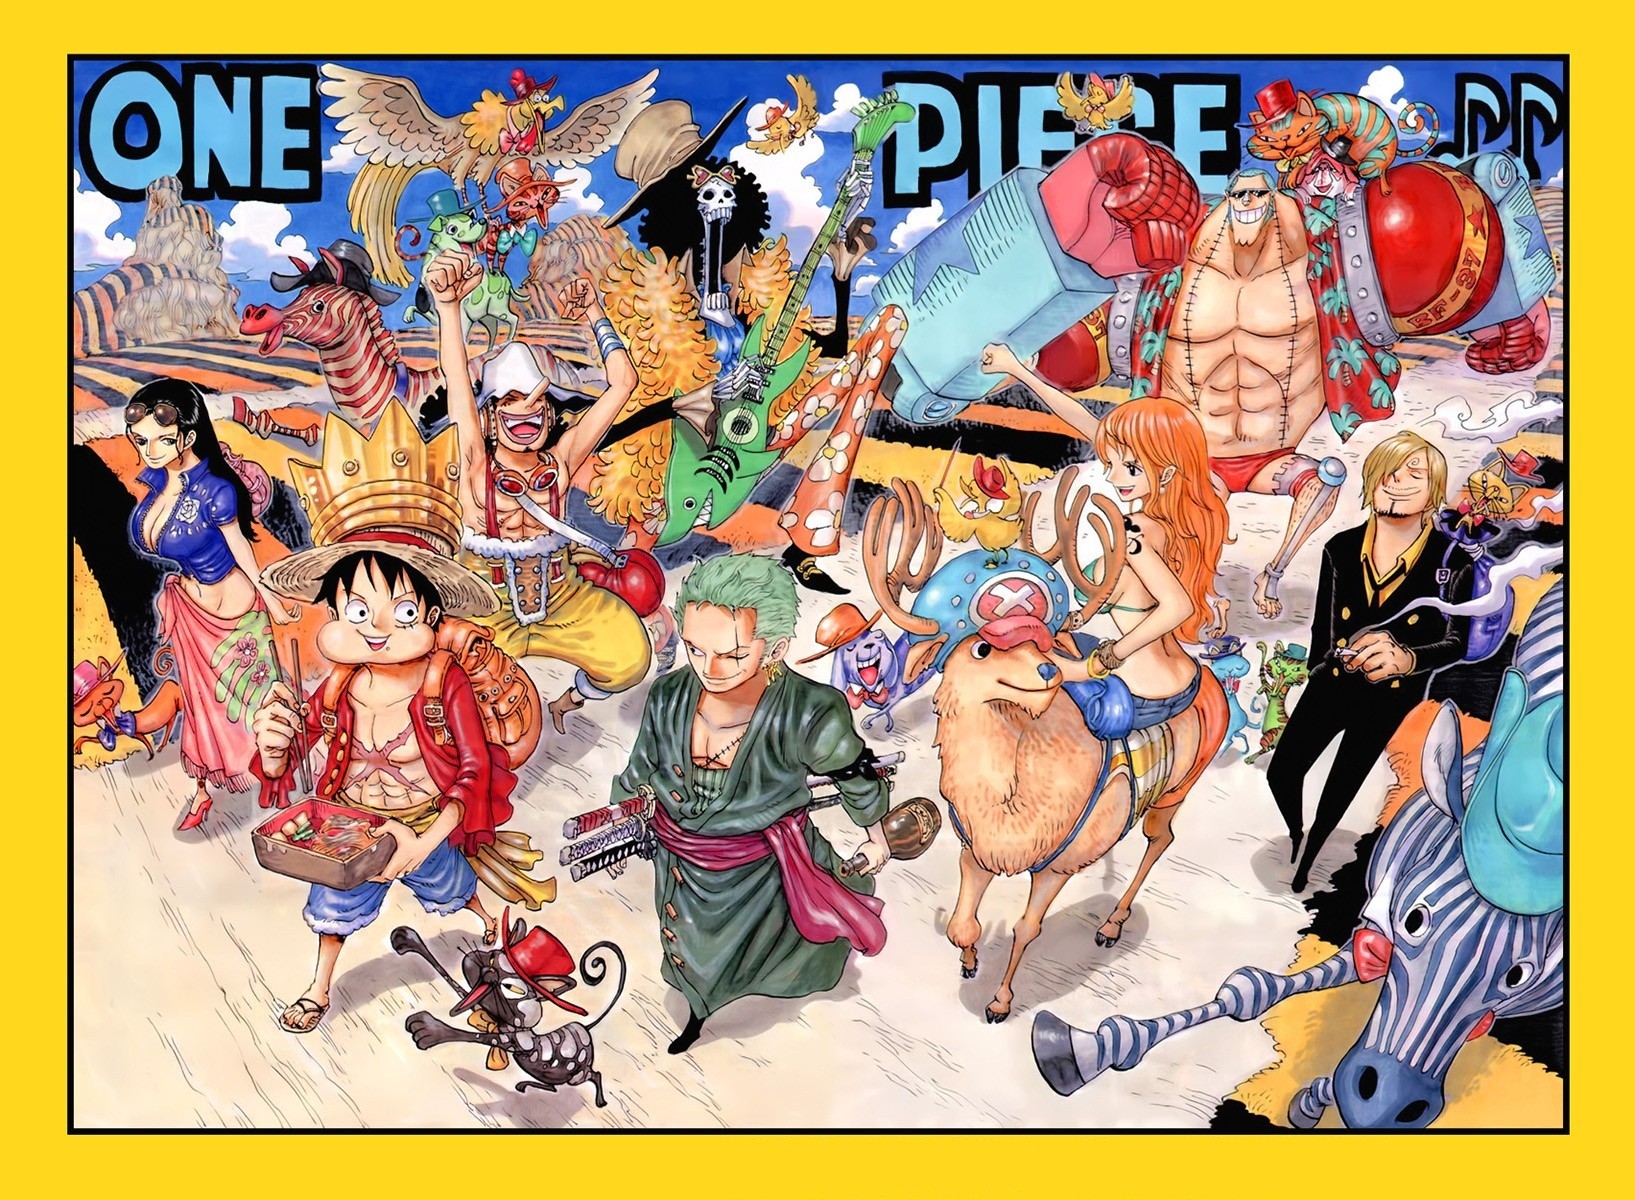 Anime 1635x1200 One Piece Nico Robin Monkey D. Luffy Usopp Roronoa Zoro Brook Tony Tony Chopper Nami Sanji anime